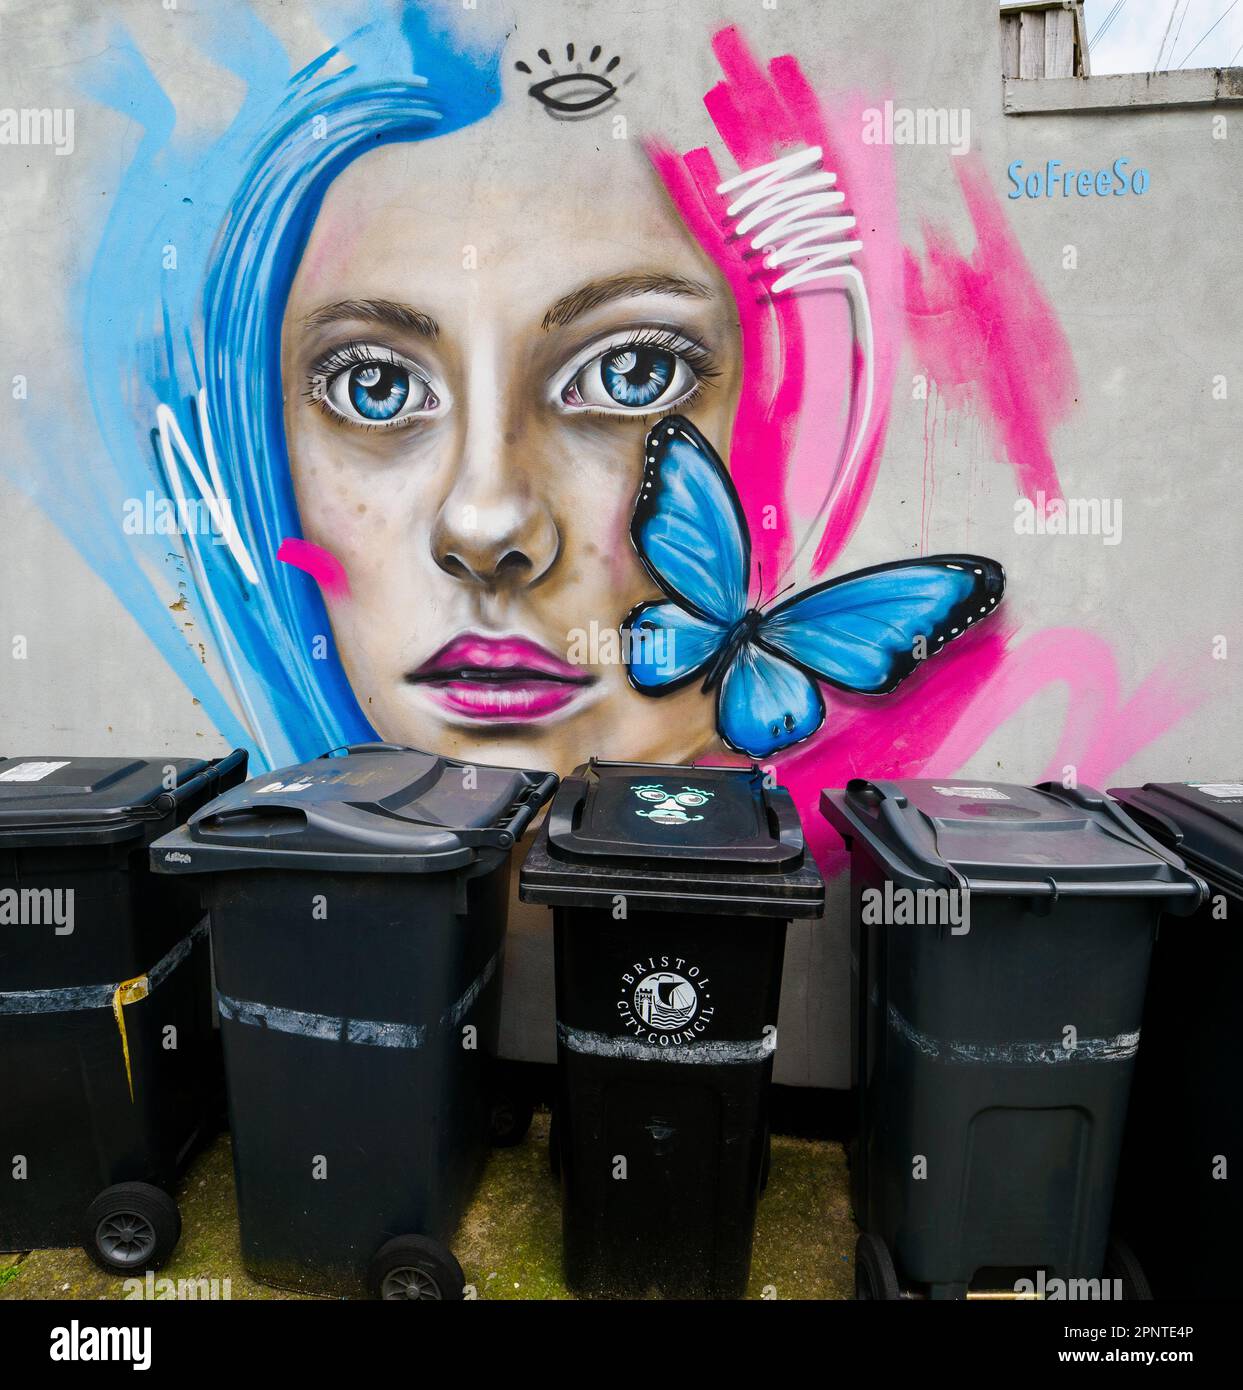 Straßenszene in Bristol UK mit Graffiti einer schönen Frau und einem blauen Schmetterling, der eine trübe Reihe von Abfalleimern erhellt Stockfoto